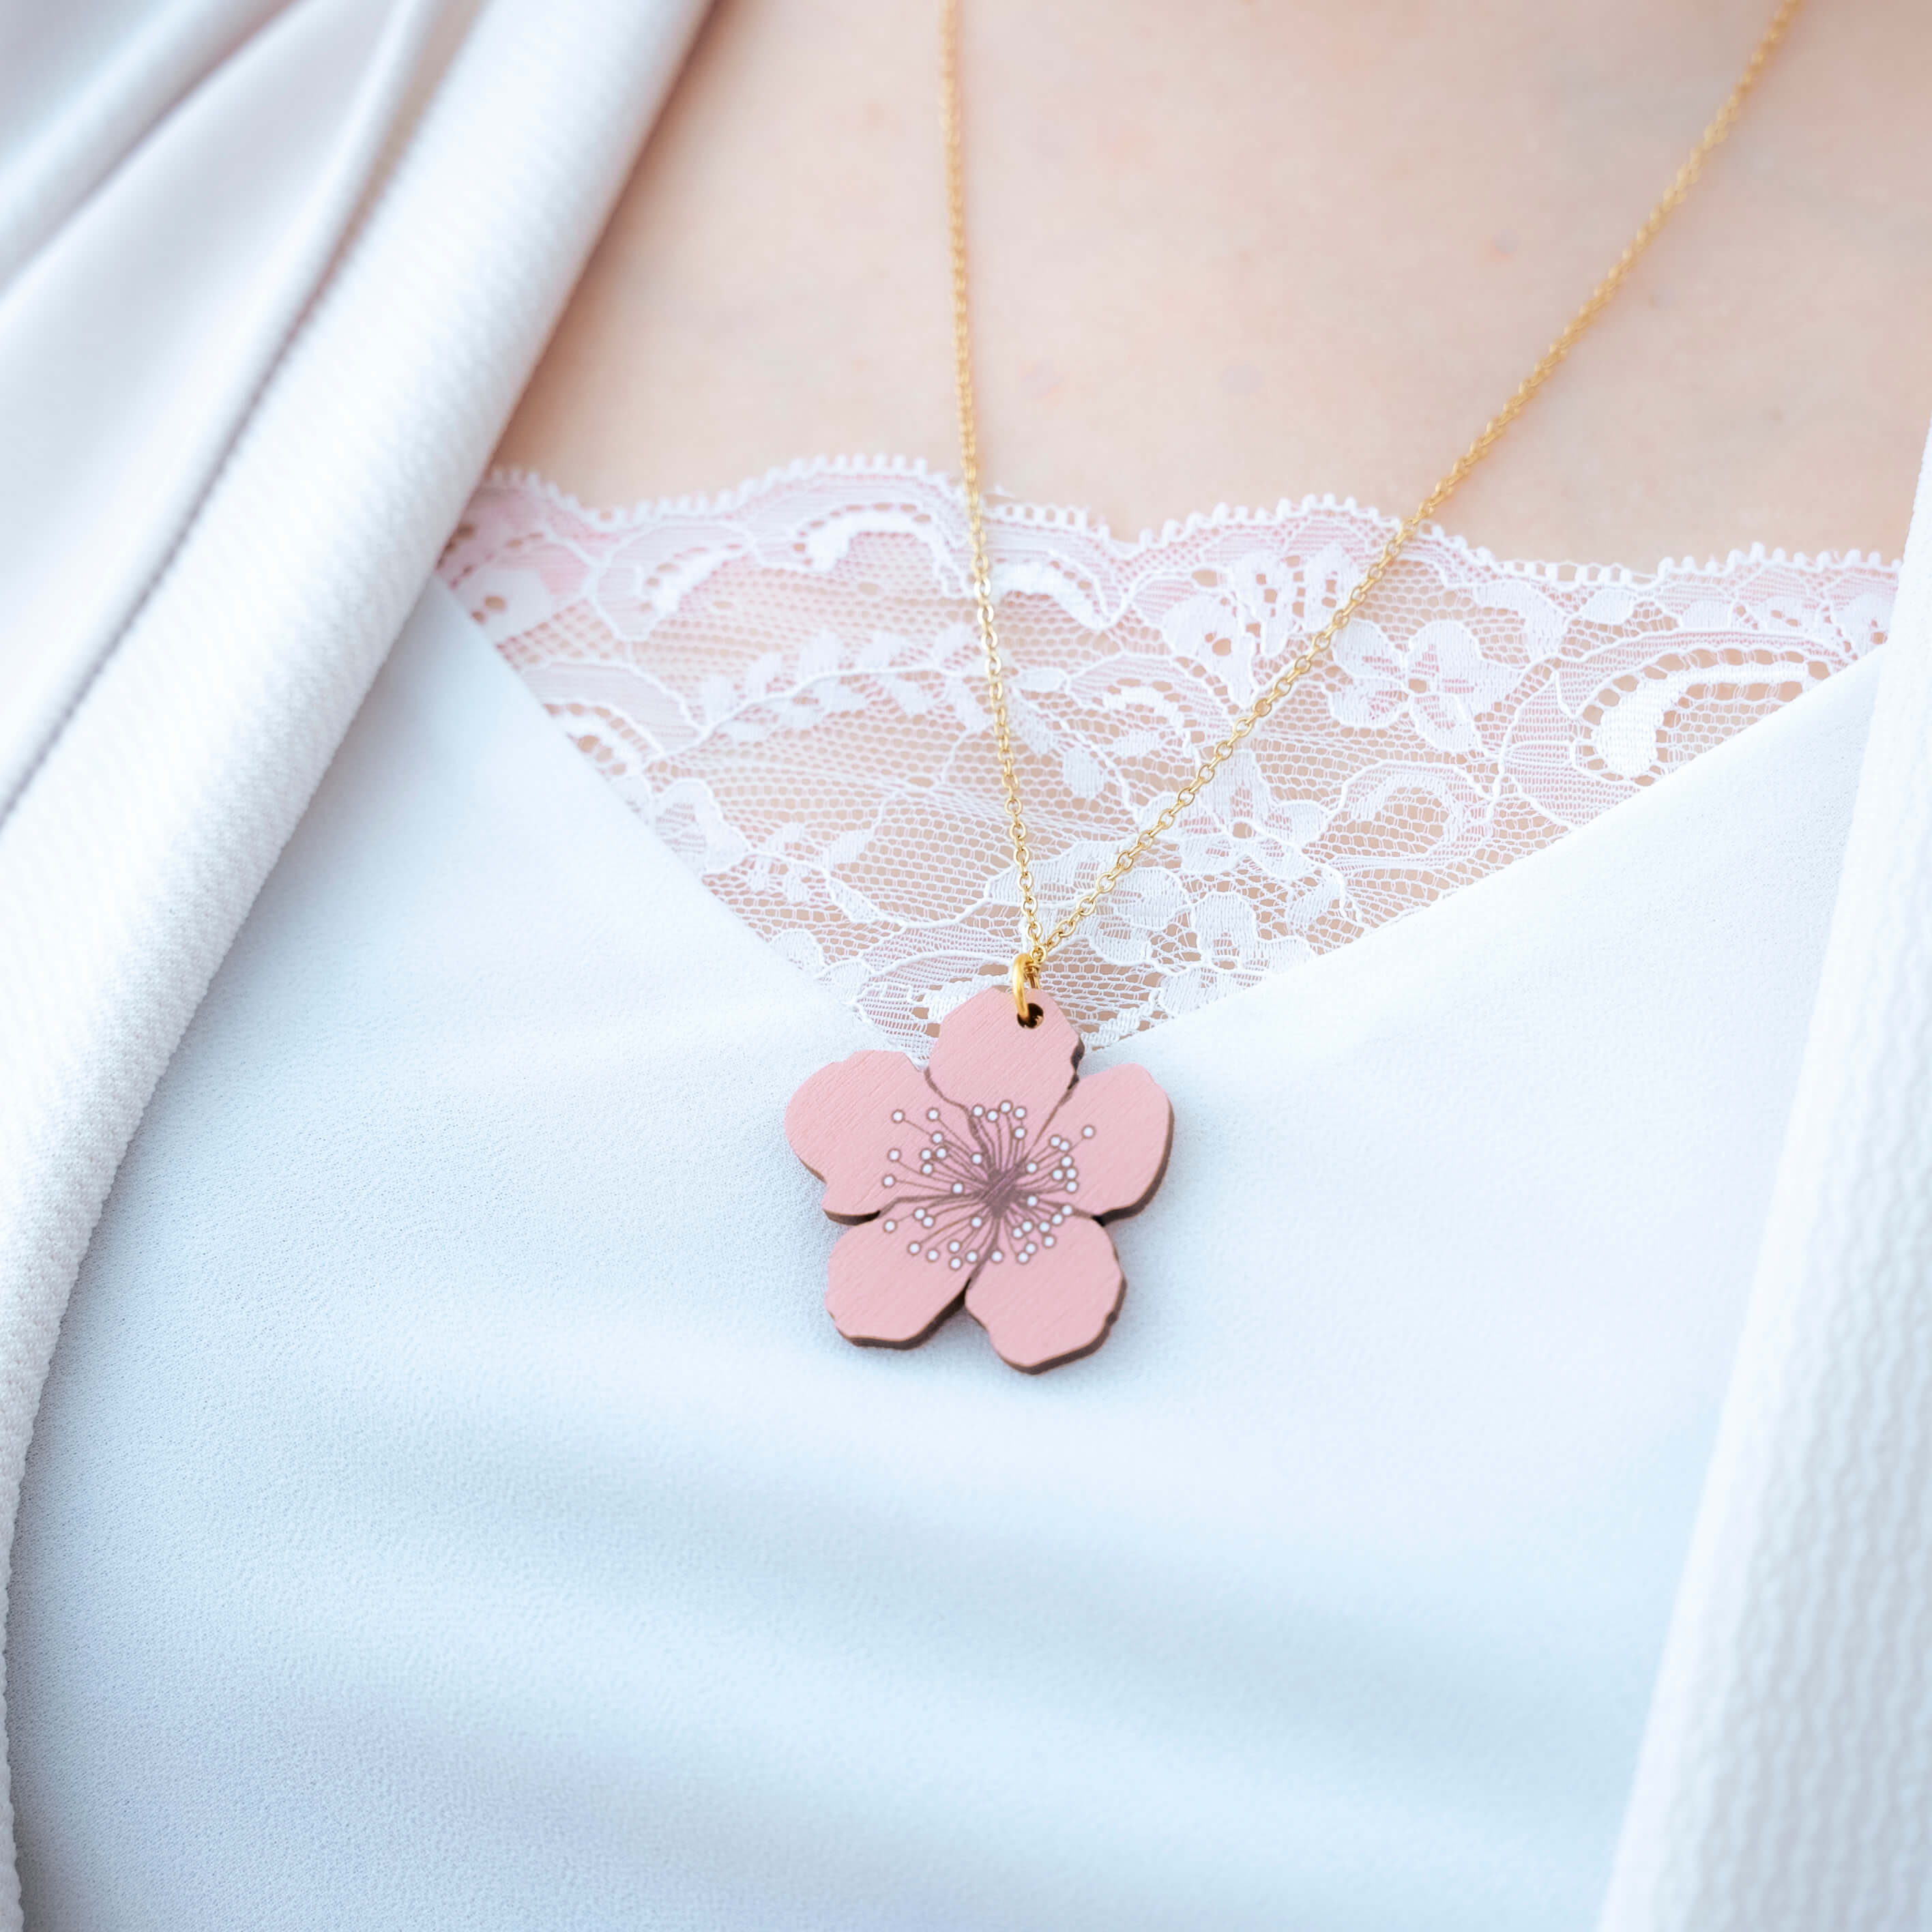 Kaunis sakura kaulakoru. Sakura (桜) tarkoittaa japaninkielellä kirsikankukkaa ja se symboloi uuden alkua ja elämän katoavaisuudessa piilevää kauneutta. Tämä kaunis sakura viimeistelee niin arki- kuin juhlailmeen. Japanilaisessa kukkien kielessä, eli hanakotobassa, kirsikankukat symboloivat puhdasta ja lempeää sydäntä. Kuvittele, miten kaunis ele olisi antaa tämä jollekin lahjaksi, sillä tämä sakura kaulakoru asettuu lähelle sydäntä. Käsintehty Suomessa.